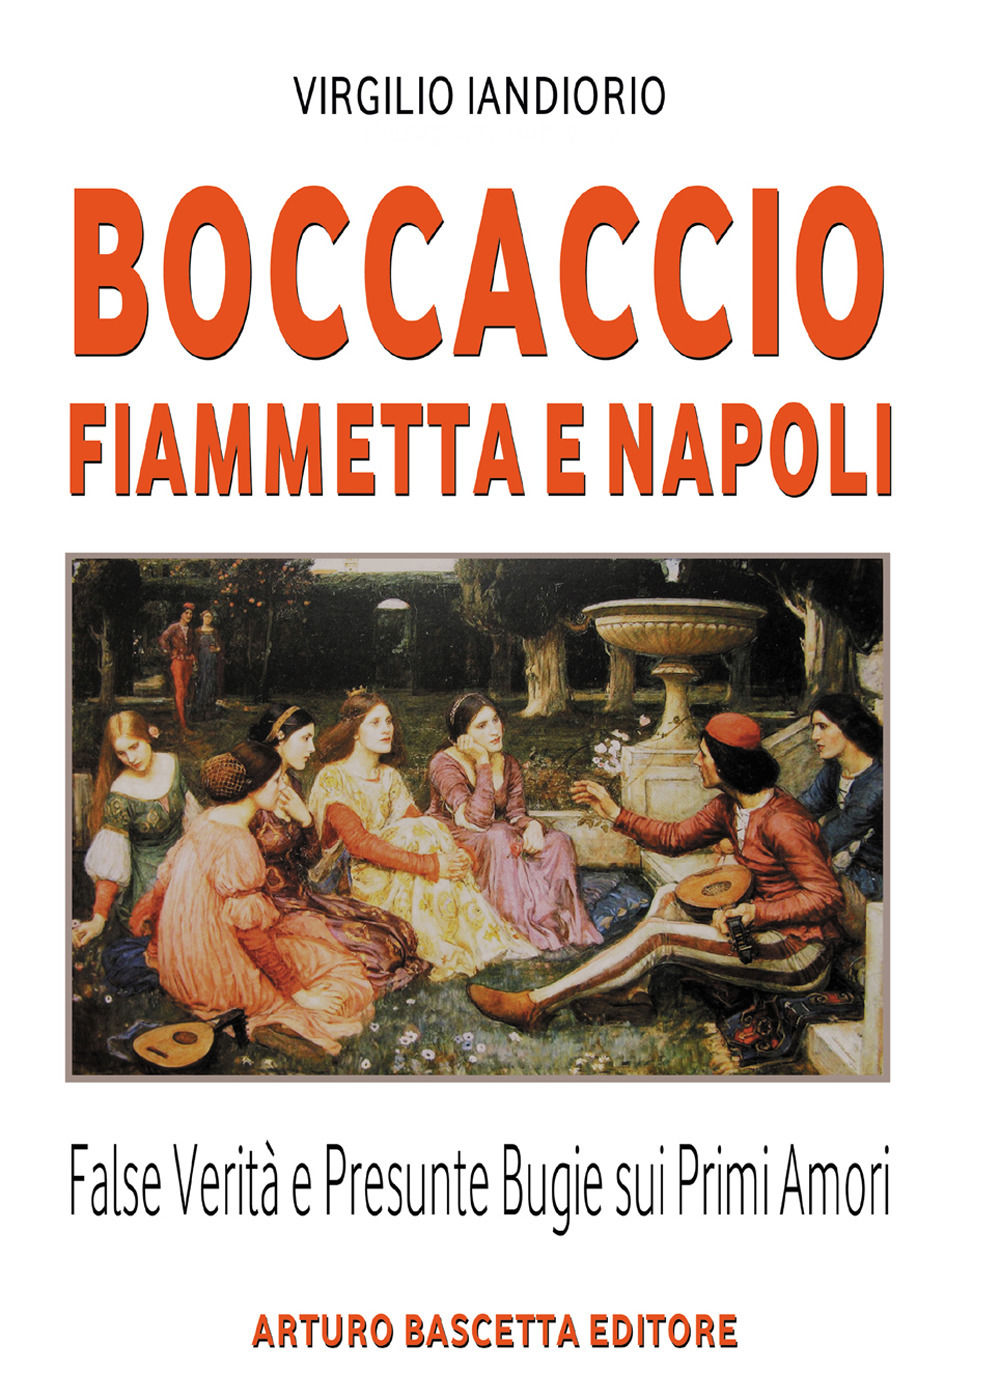 Boccaccio, Fiammetta e Napoli. False verità e presunte bugie sui primi amori